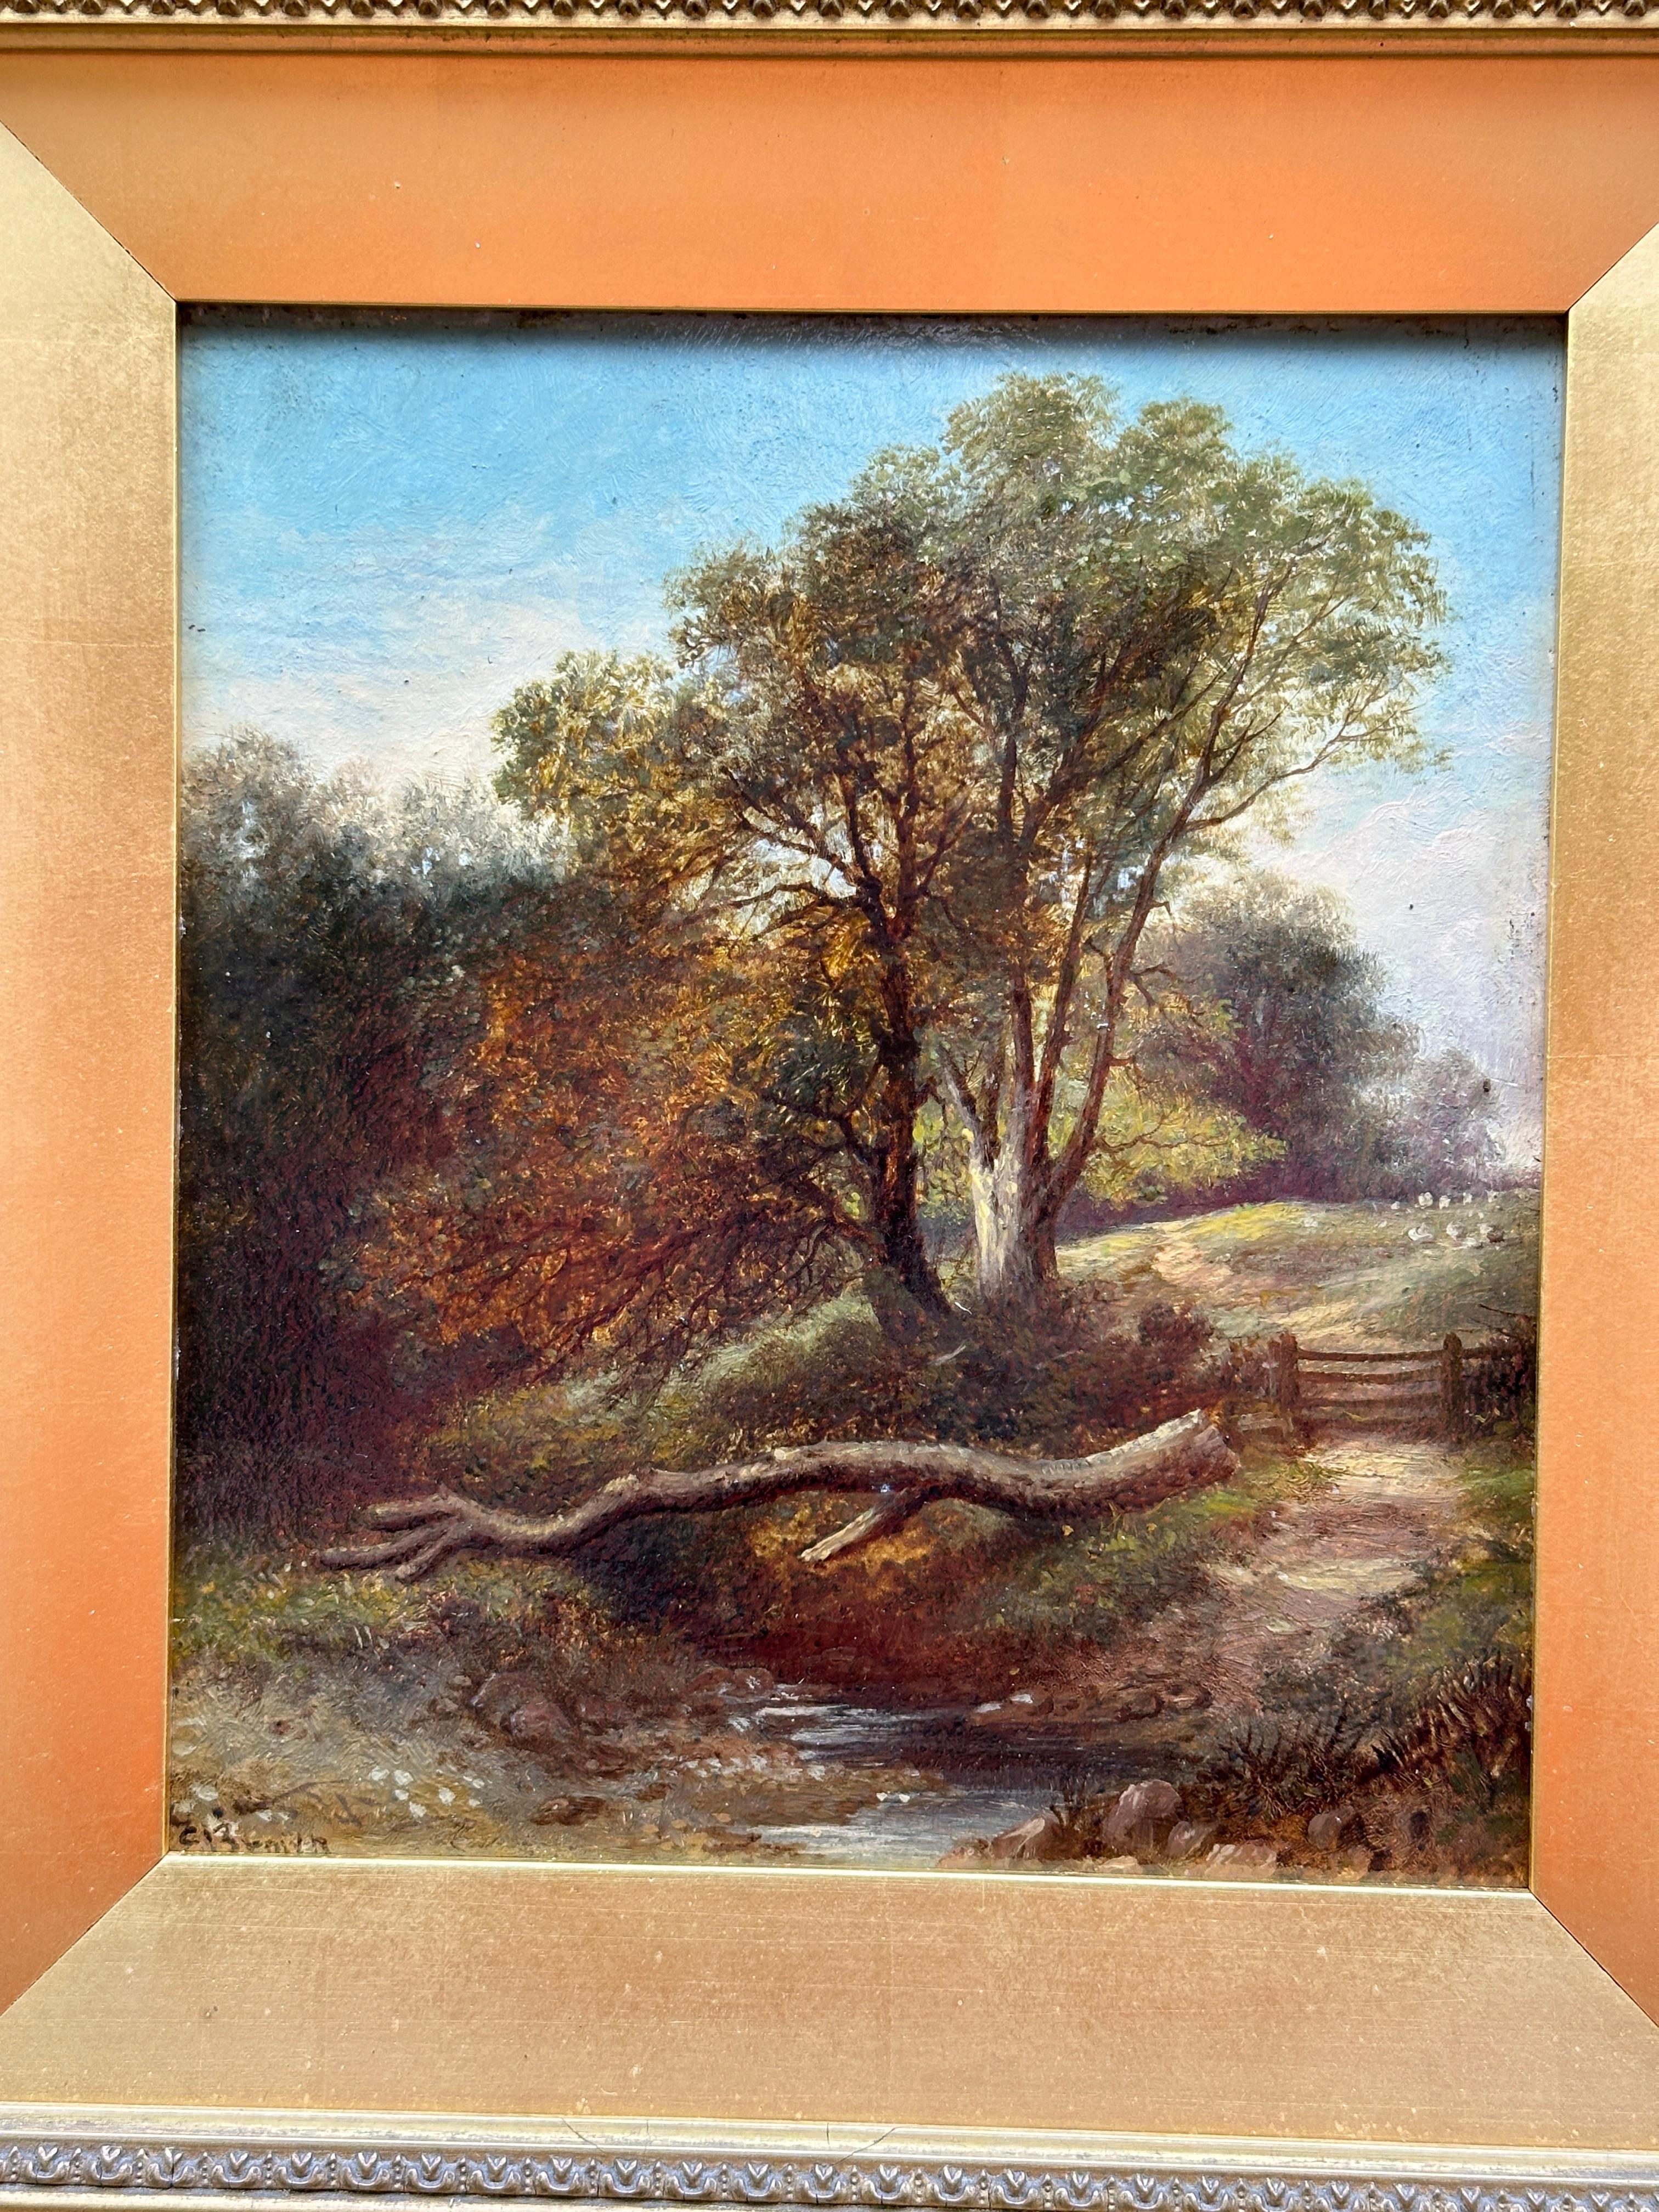 Englische Landschaft des 19. Jahrhunderts mit Eichenbäumen, einem Fluss und Schafen auf einem Weg – Painting von C. Brown